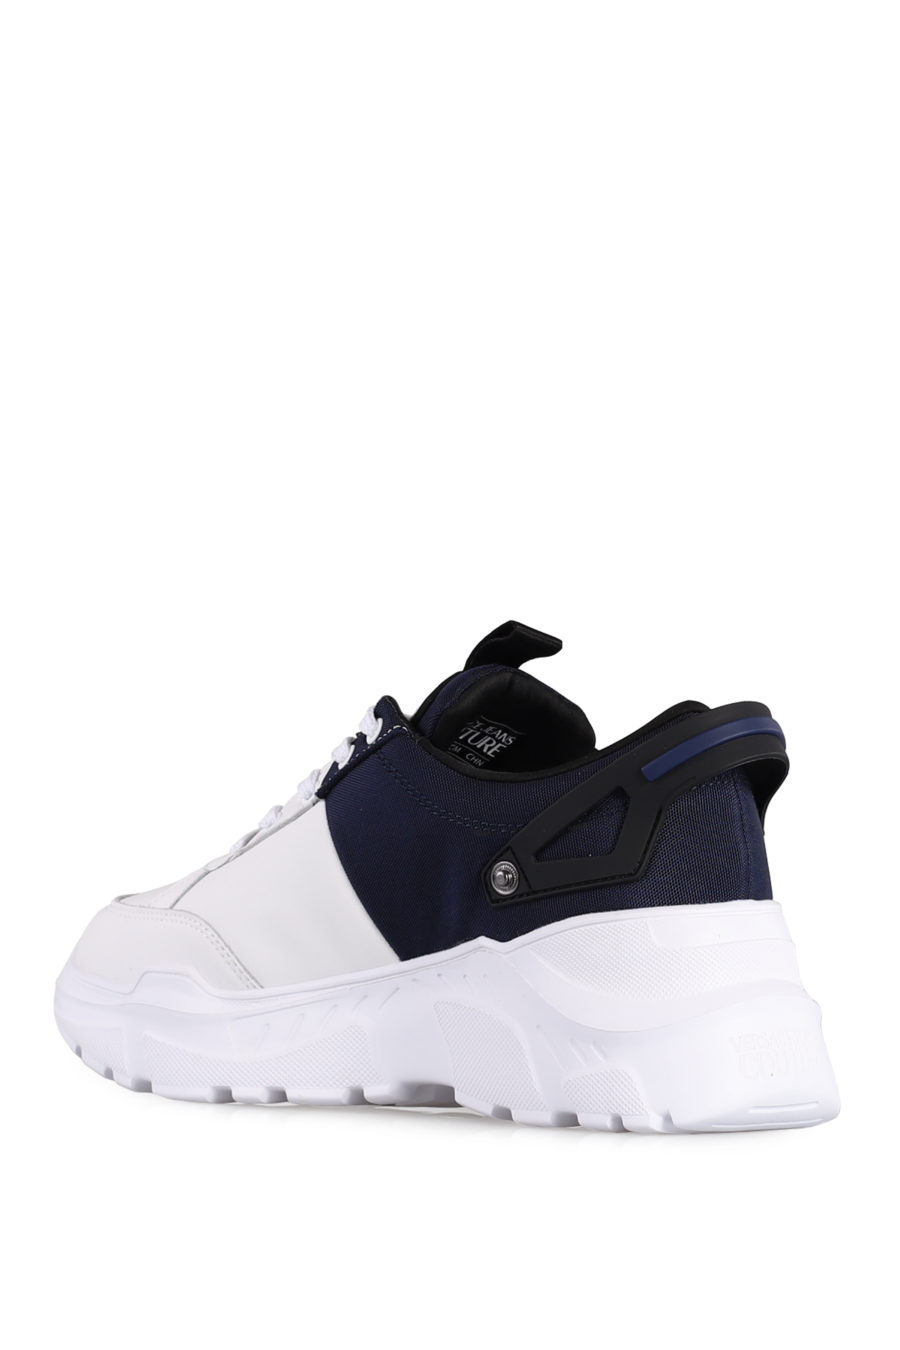 Zapatillas "Speedtrack" de color blanco y azul - IMG 1045